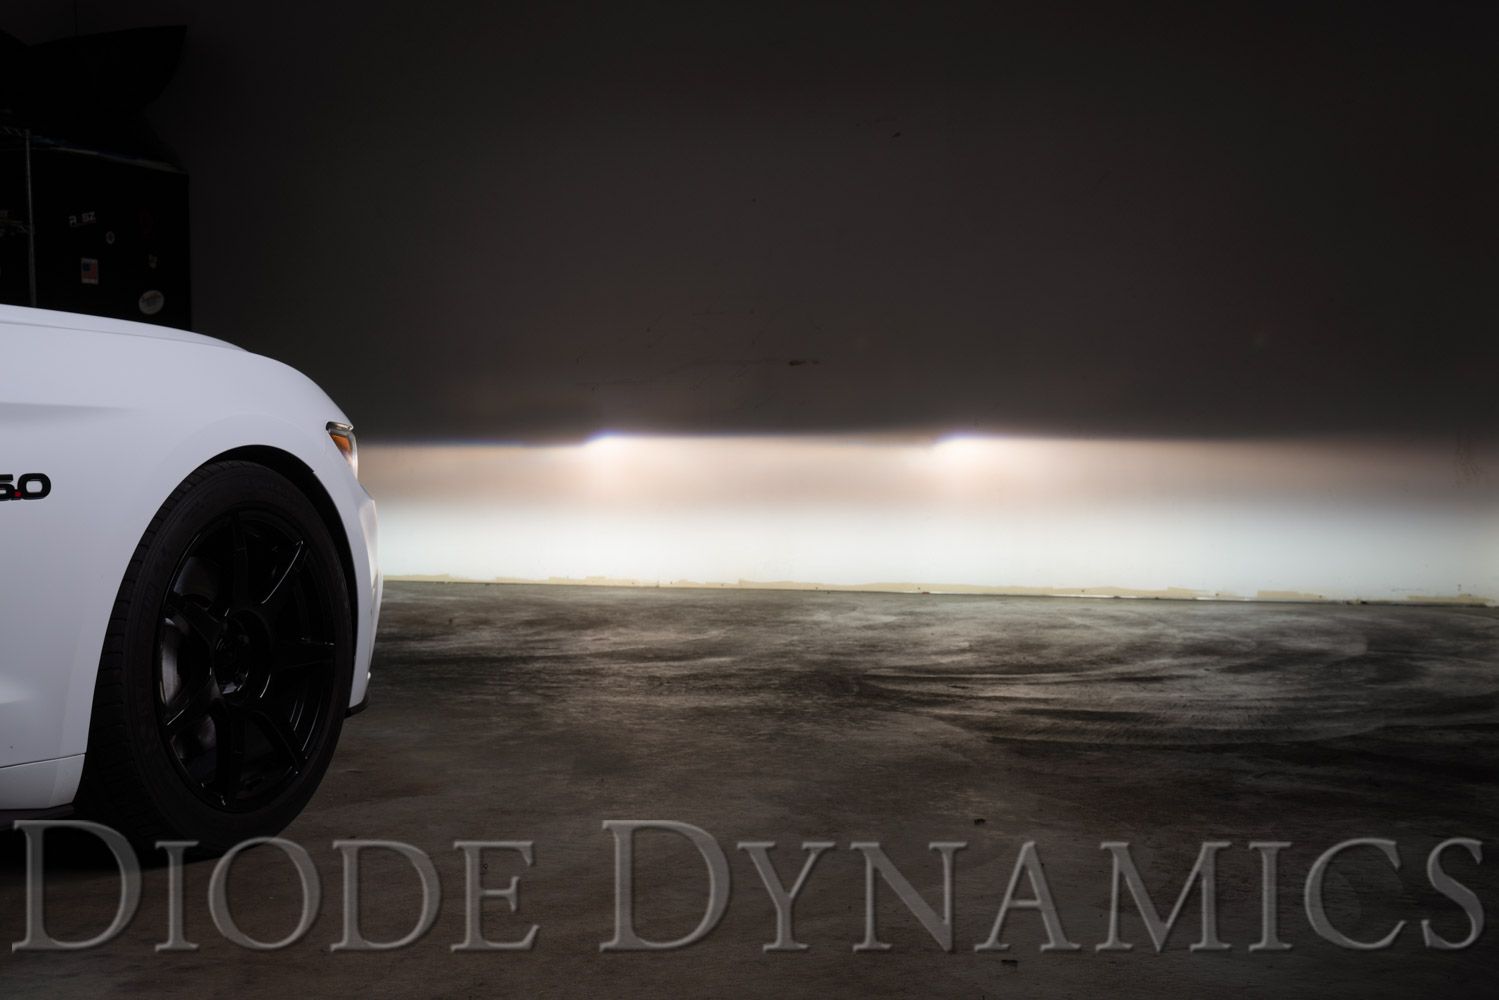 SS3 LED Fog Light Kit for 2012-2014 Acura TL Diode Dynamics-